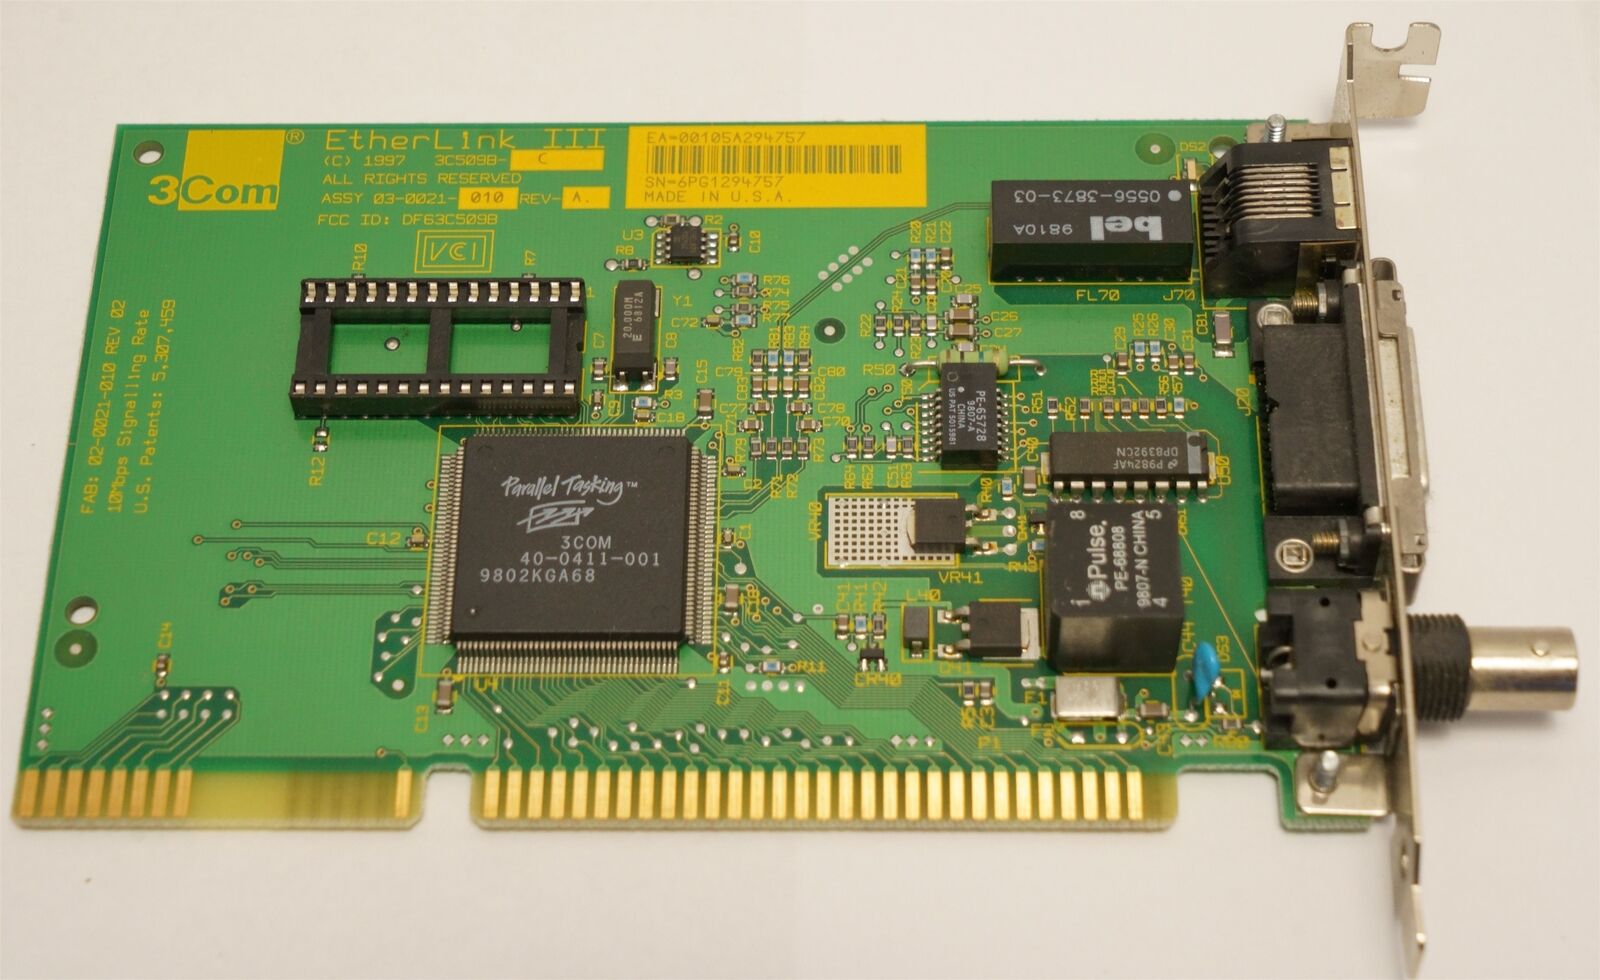 3Com Etherlink III Network Card, 16-Bit, 10Mbps, 3C5098-C